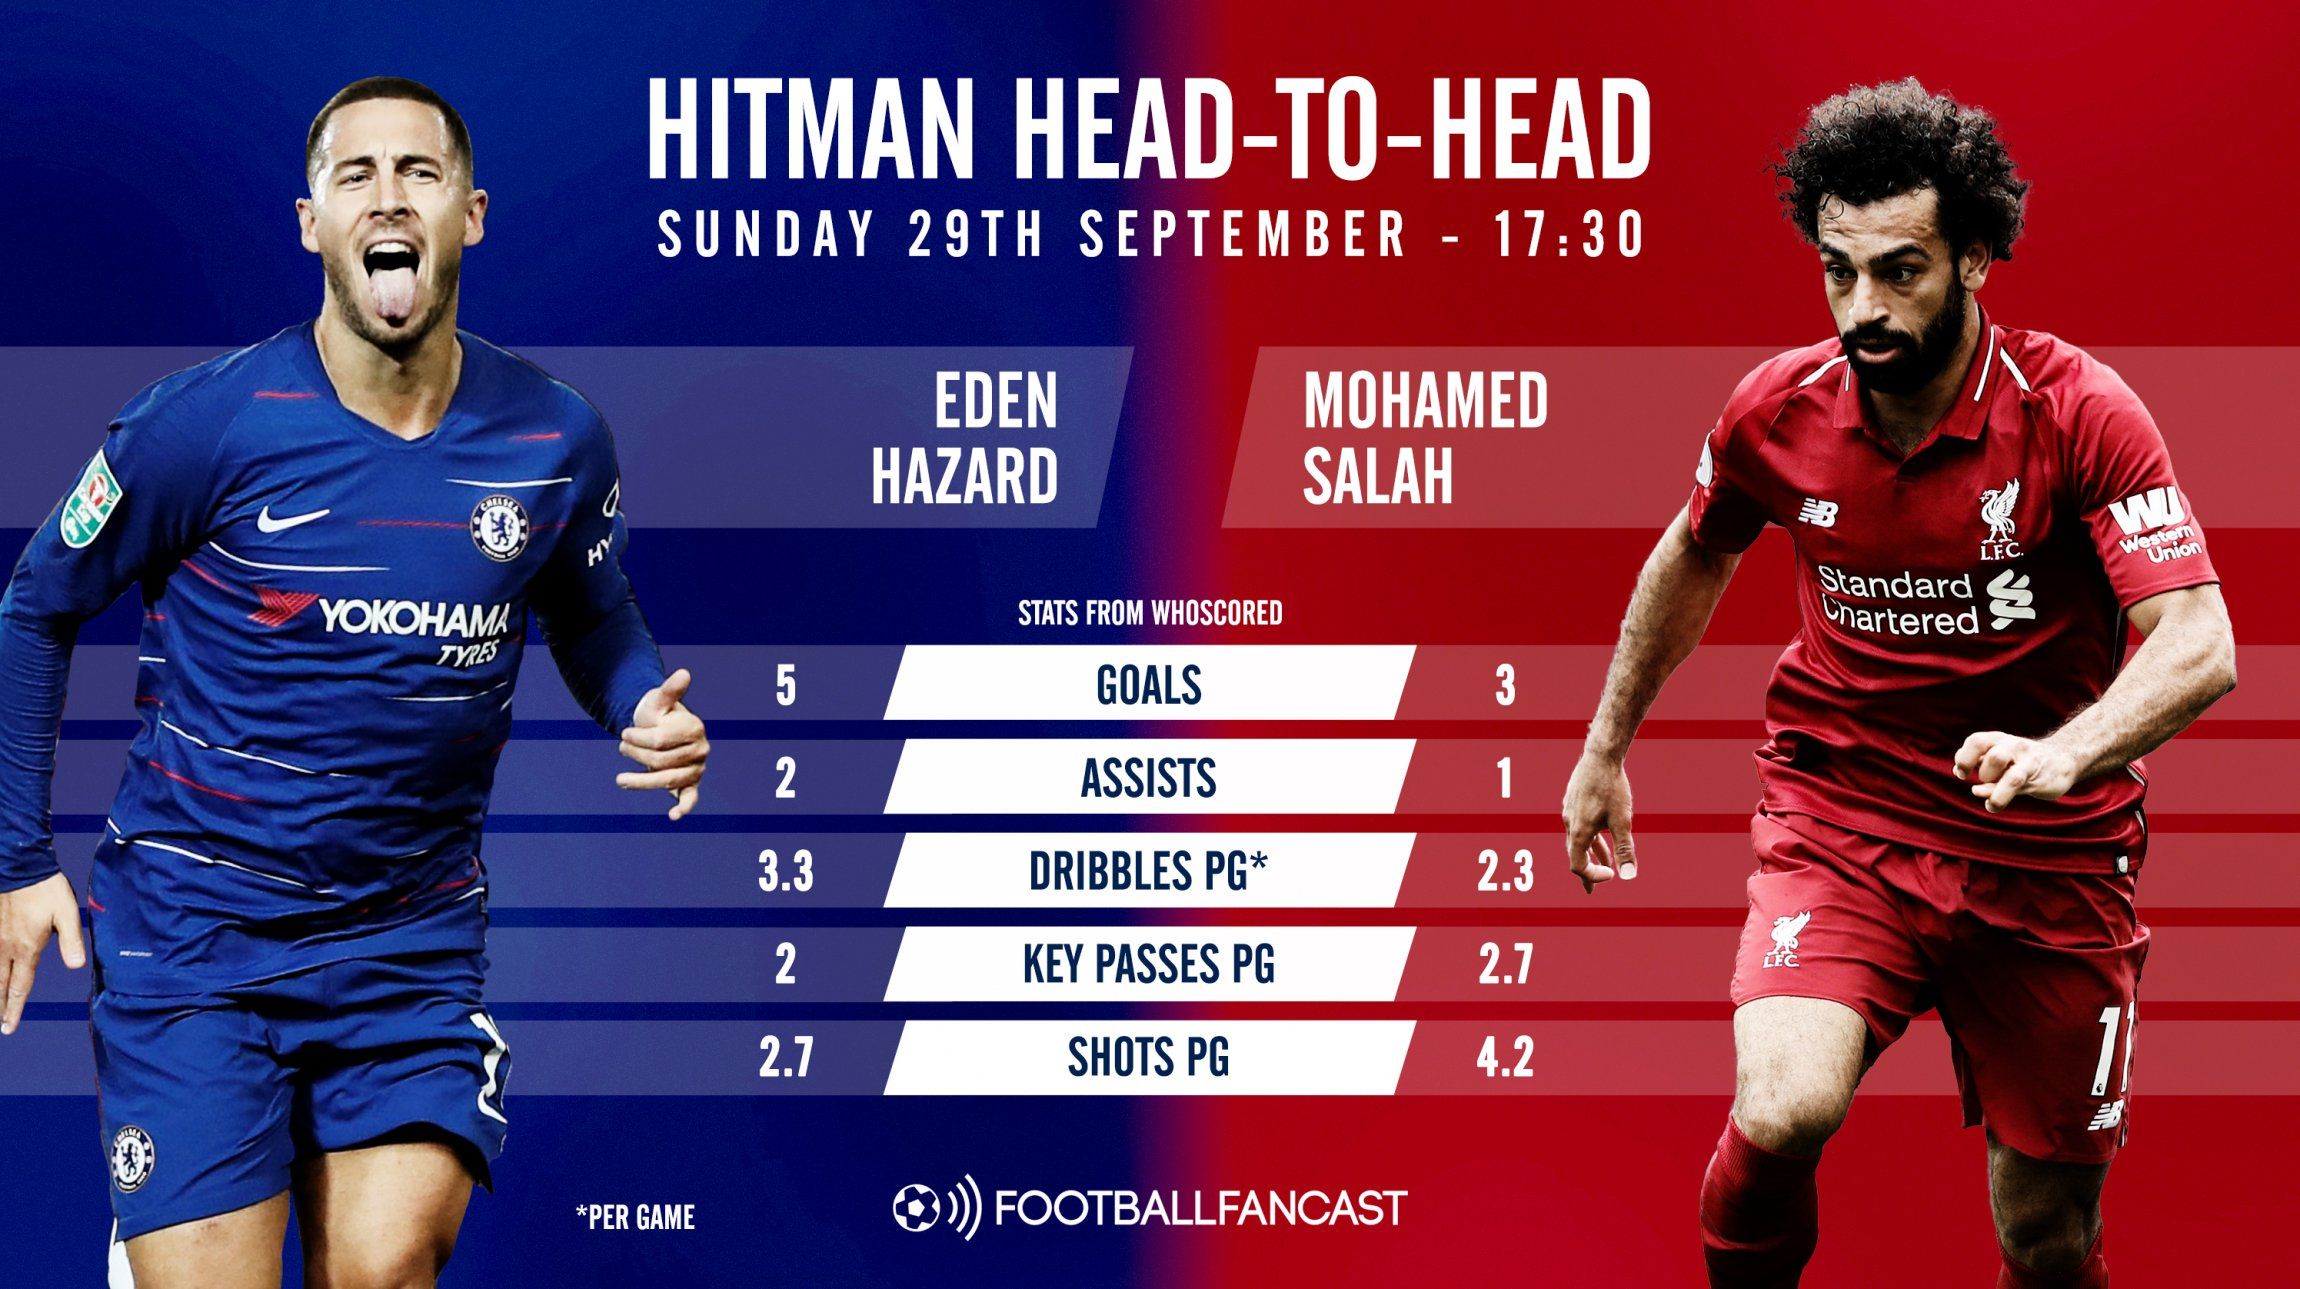 Hitman head-to-head - Eden Hazard versus Mohamed Salah